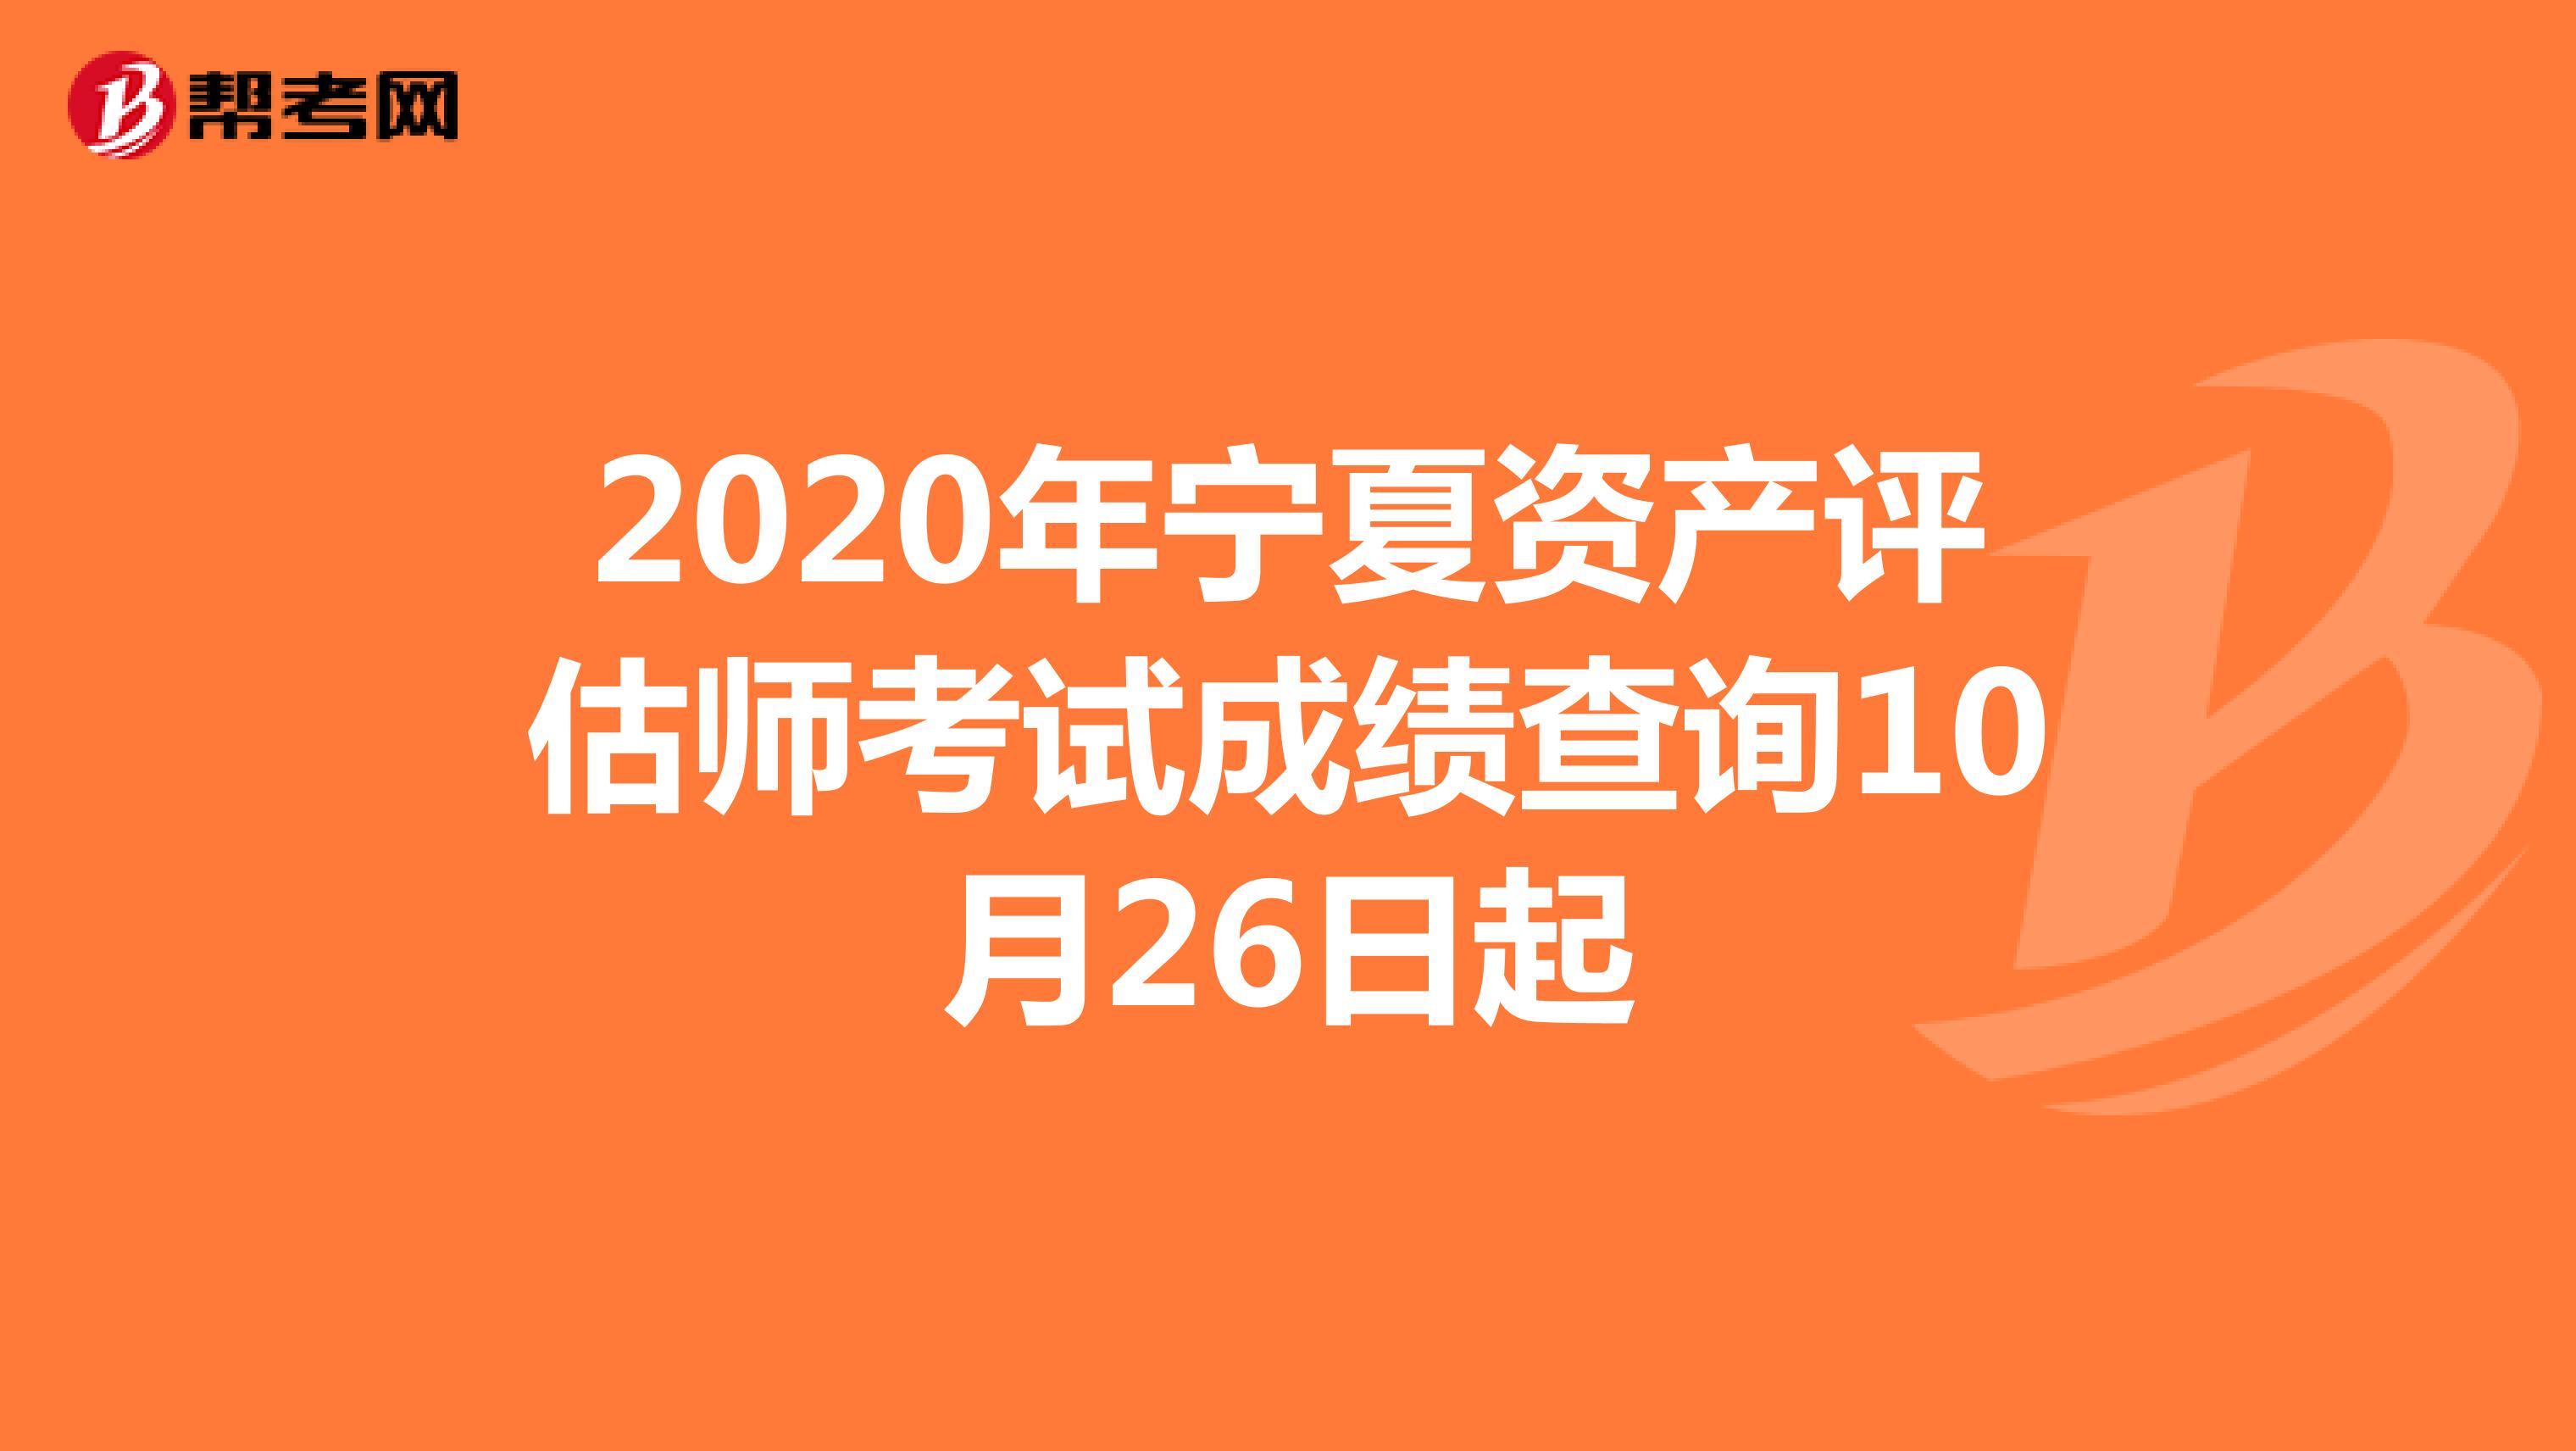 2020年宁夏资产评估师考试成绩查询10月26日起